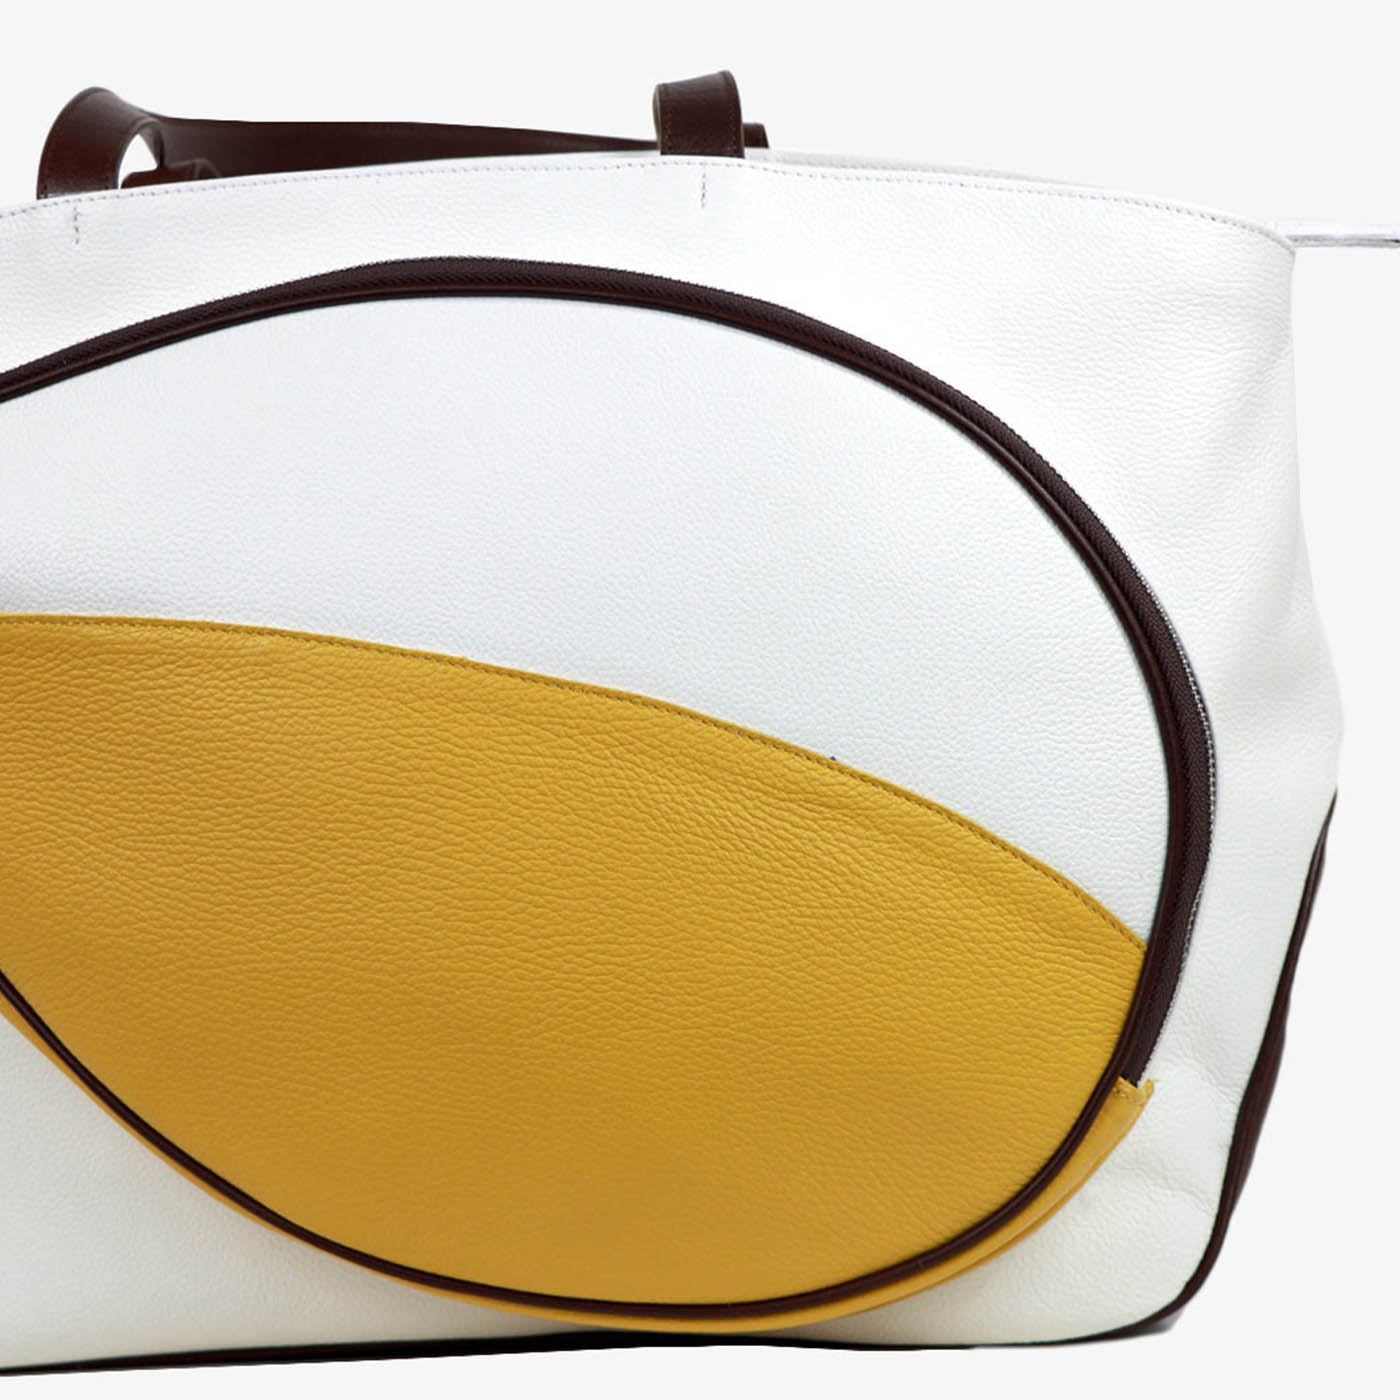 Bolsa de deporte blanca/amarilla/marrón con bolsillo en forma de raqueta de tenis - Vista alternativa 3